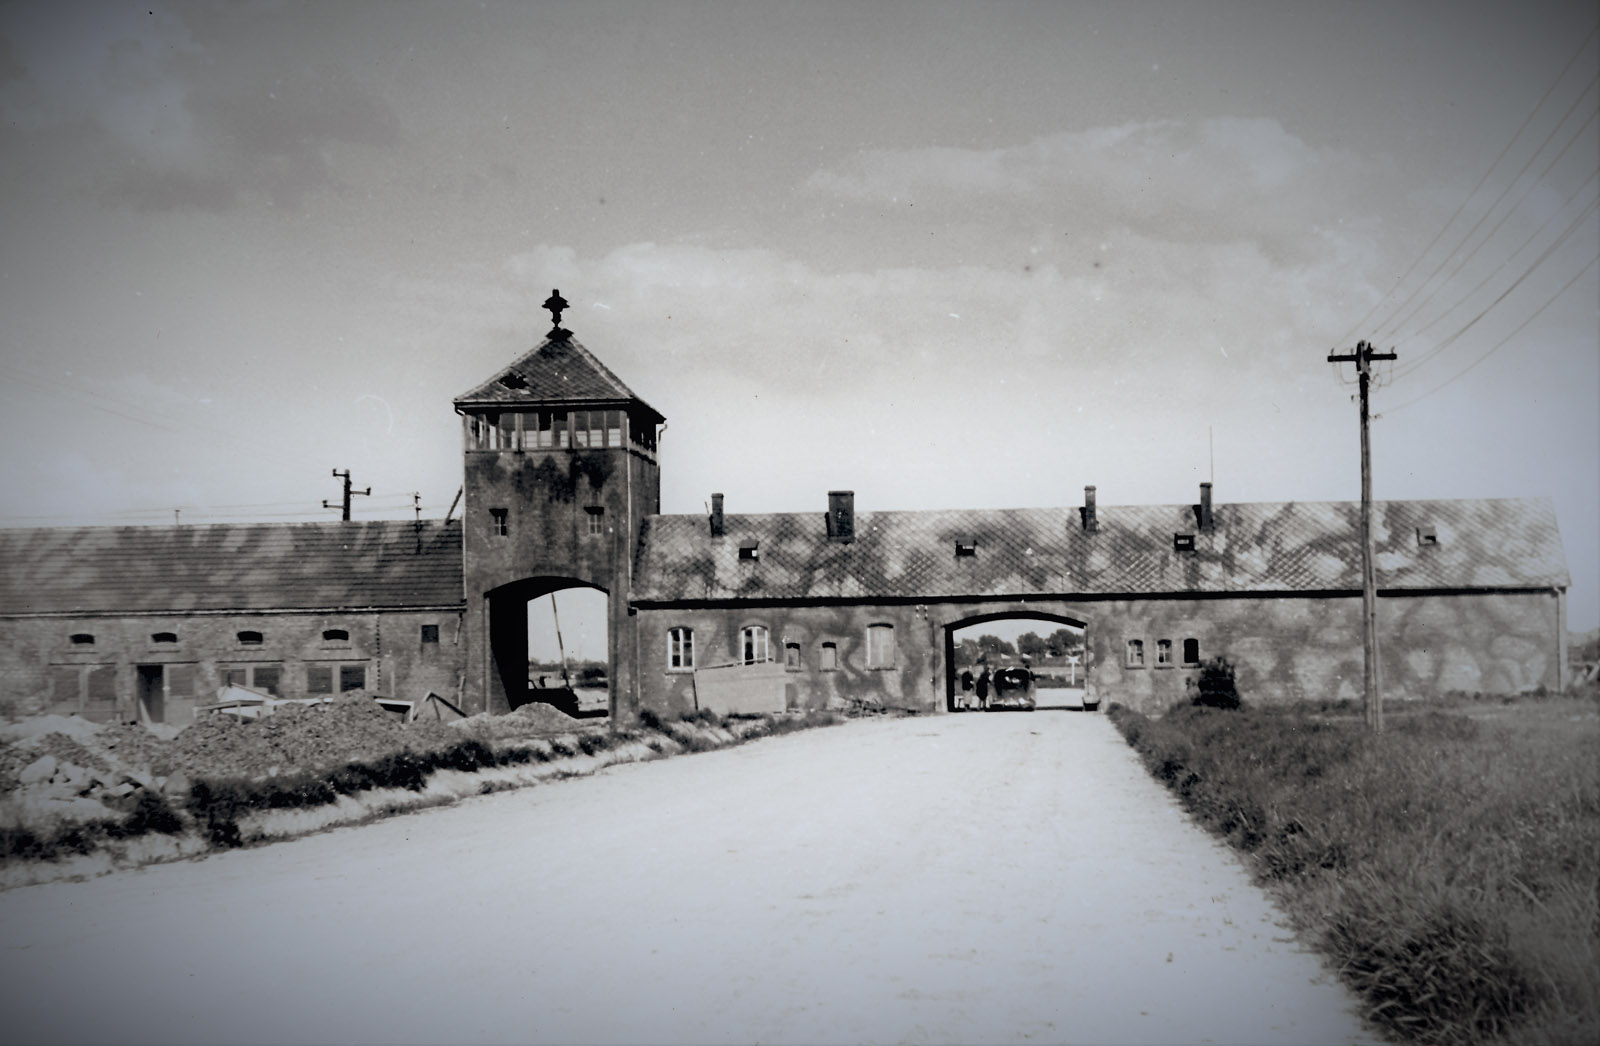 Brama byłego KL Auschwitz II_Birkenau, 29 maja 1945. Fot. Stanisław Kolowca, Archiwum IPN